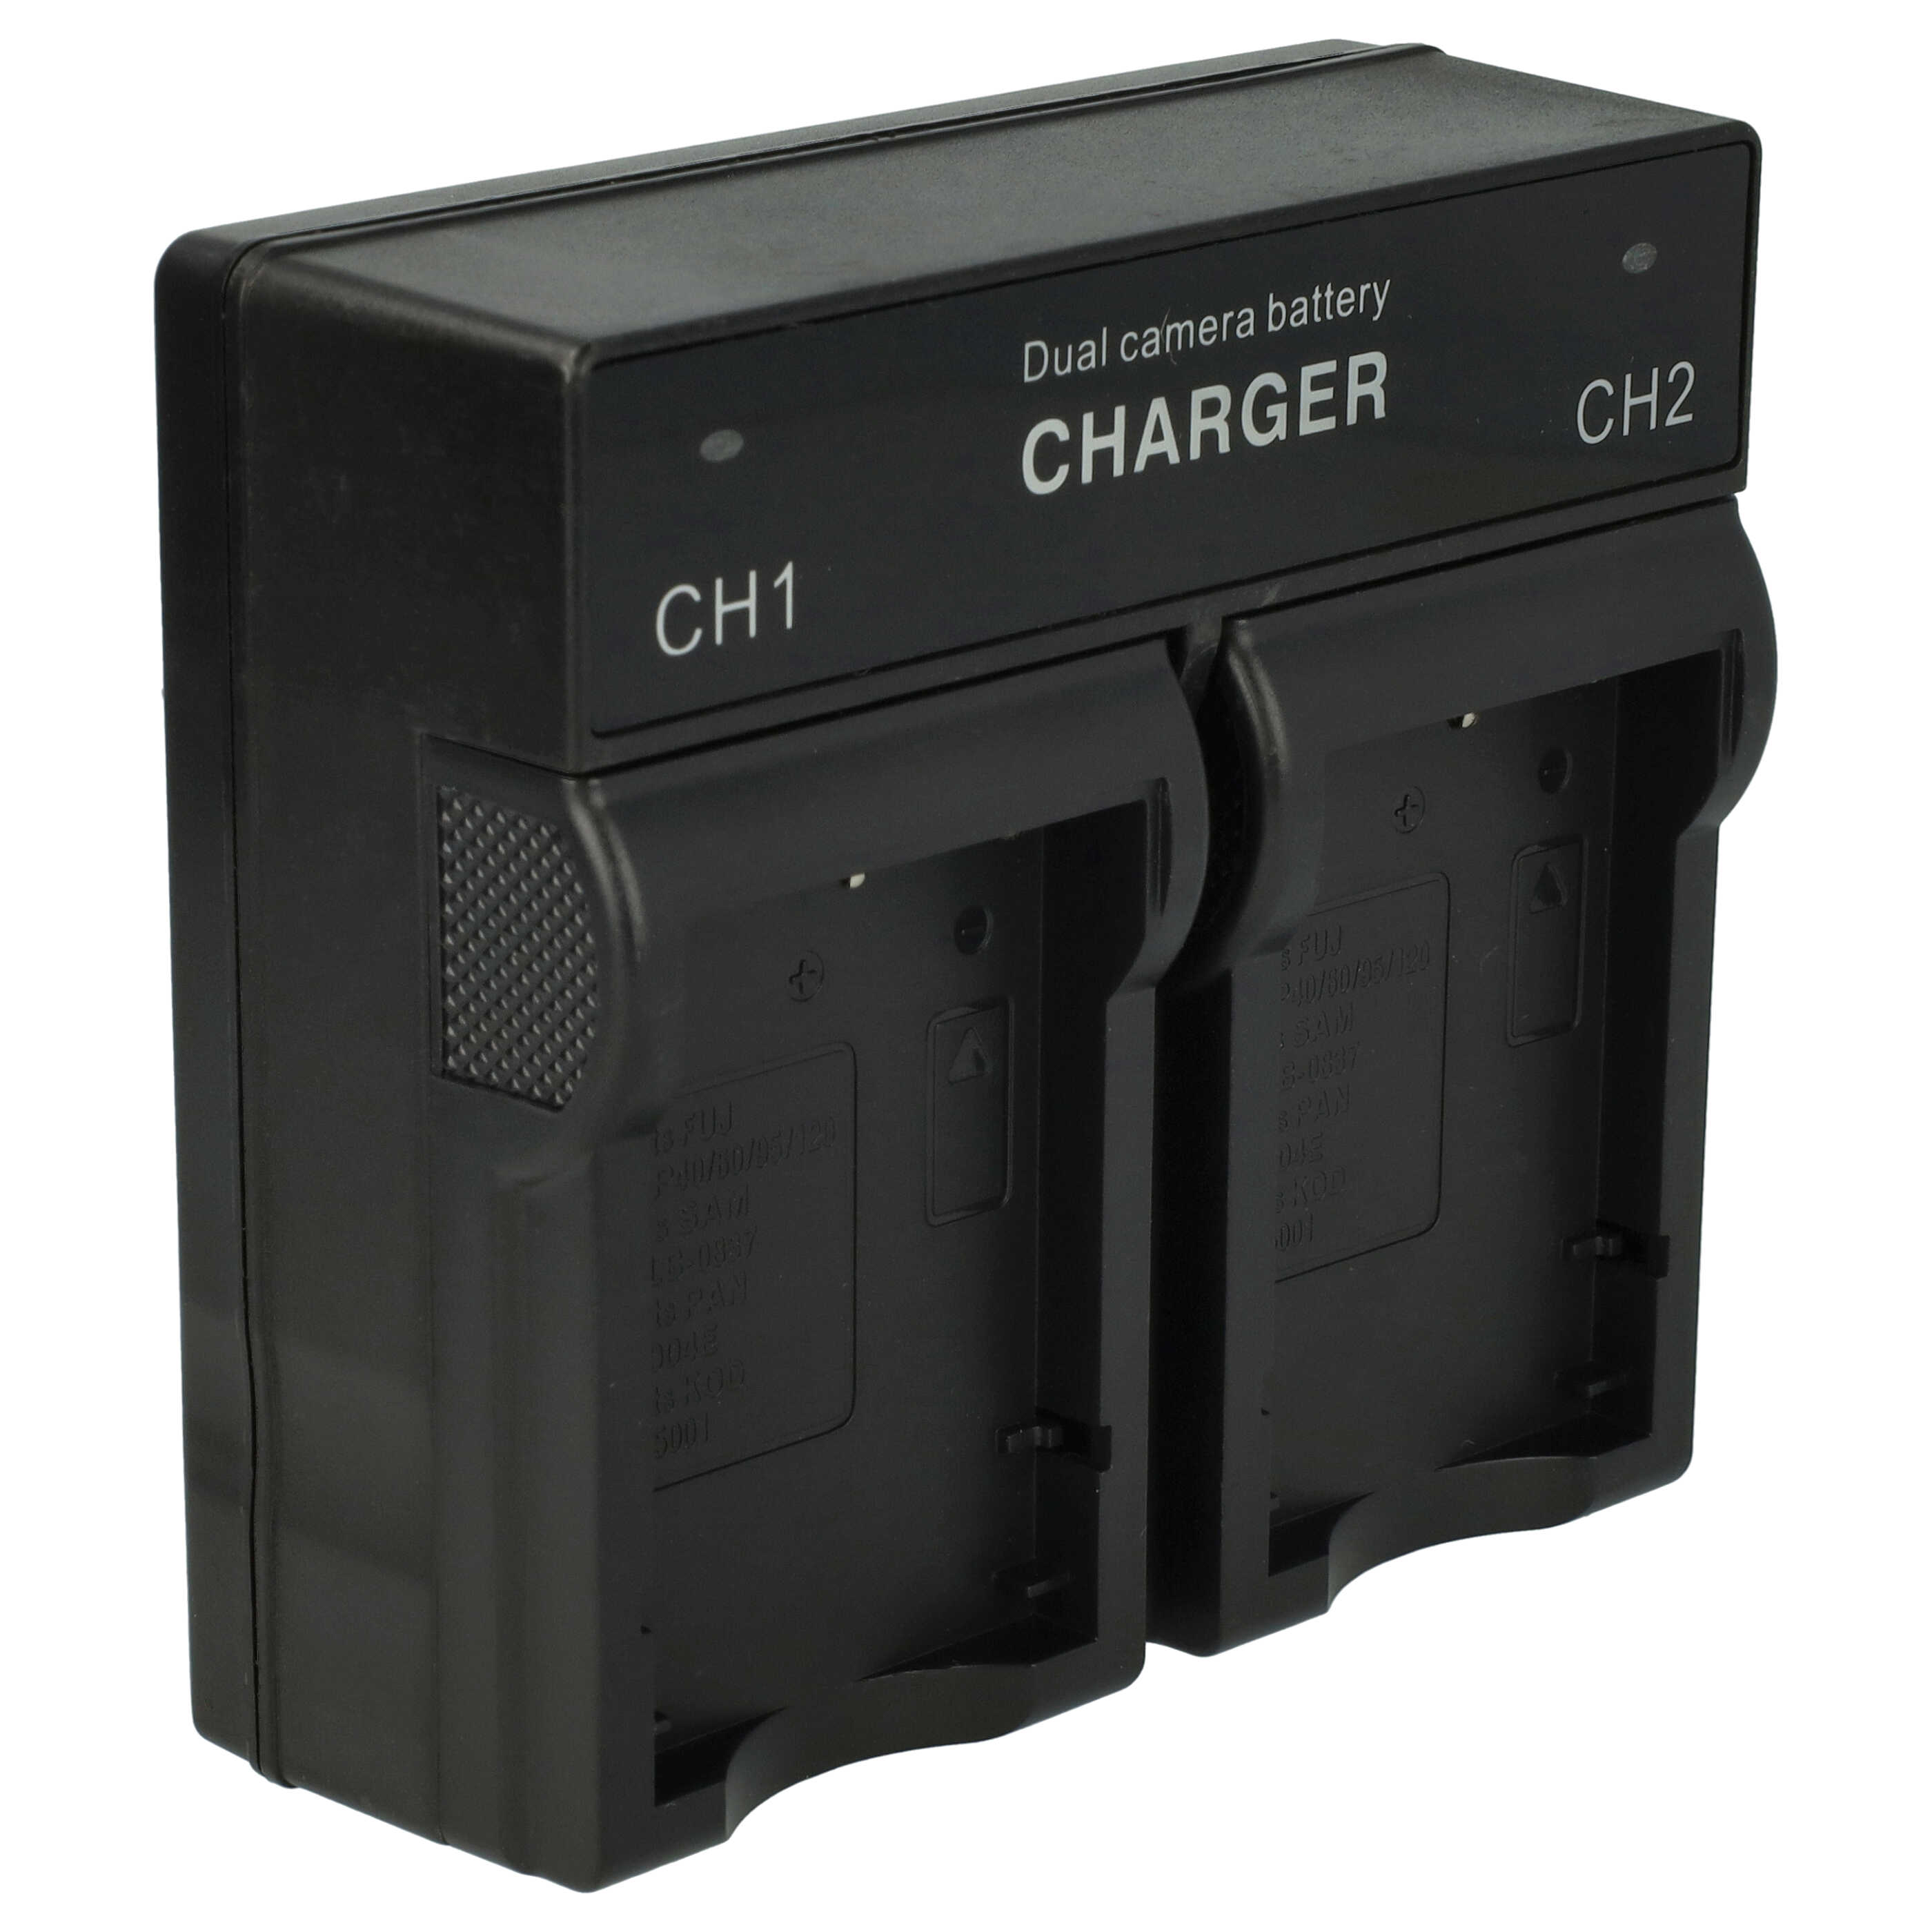 Battery Charger suitable for Belkin Digital Camera - 0.5 / 0.9 A, 4.2 / 8.4 V